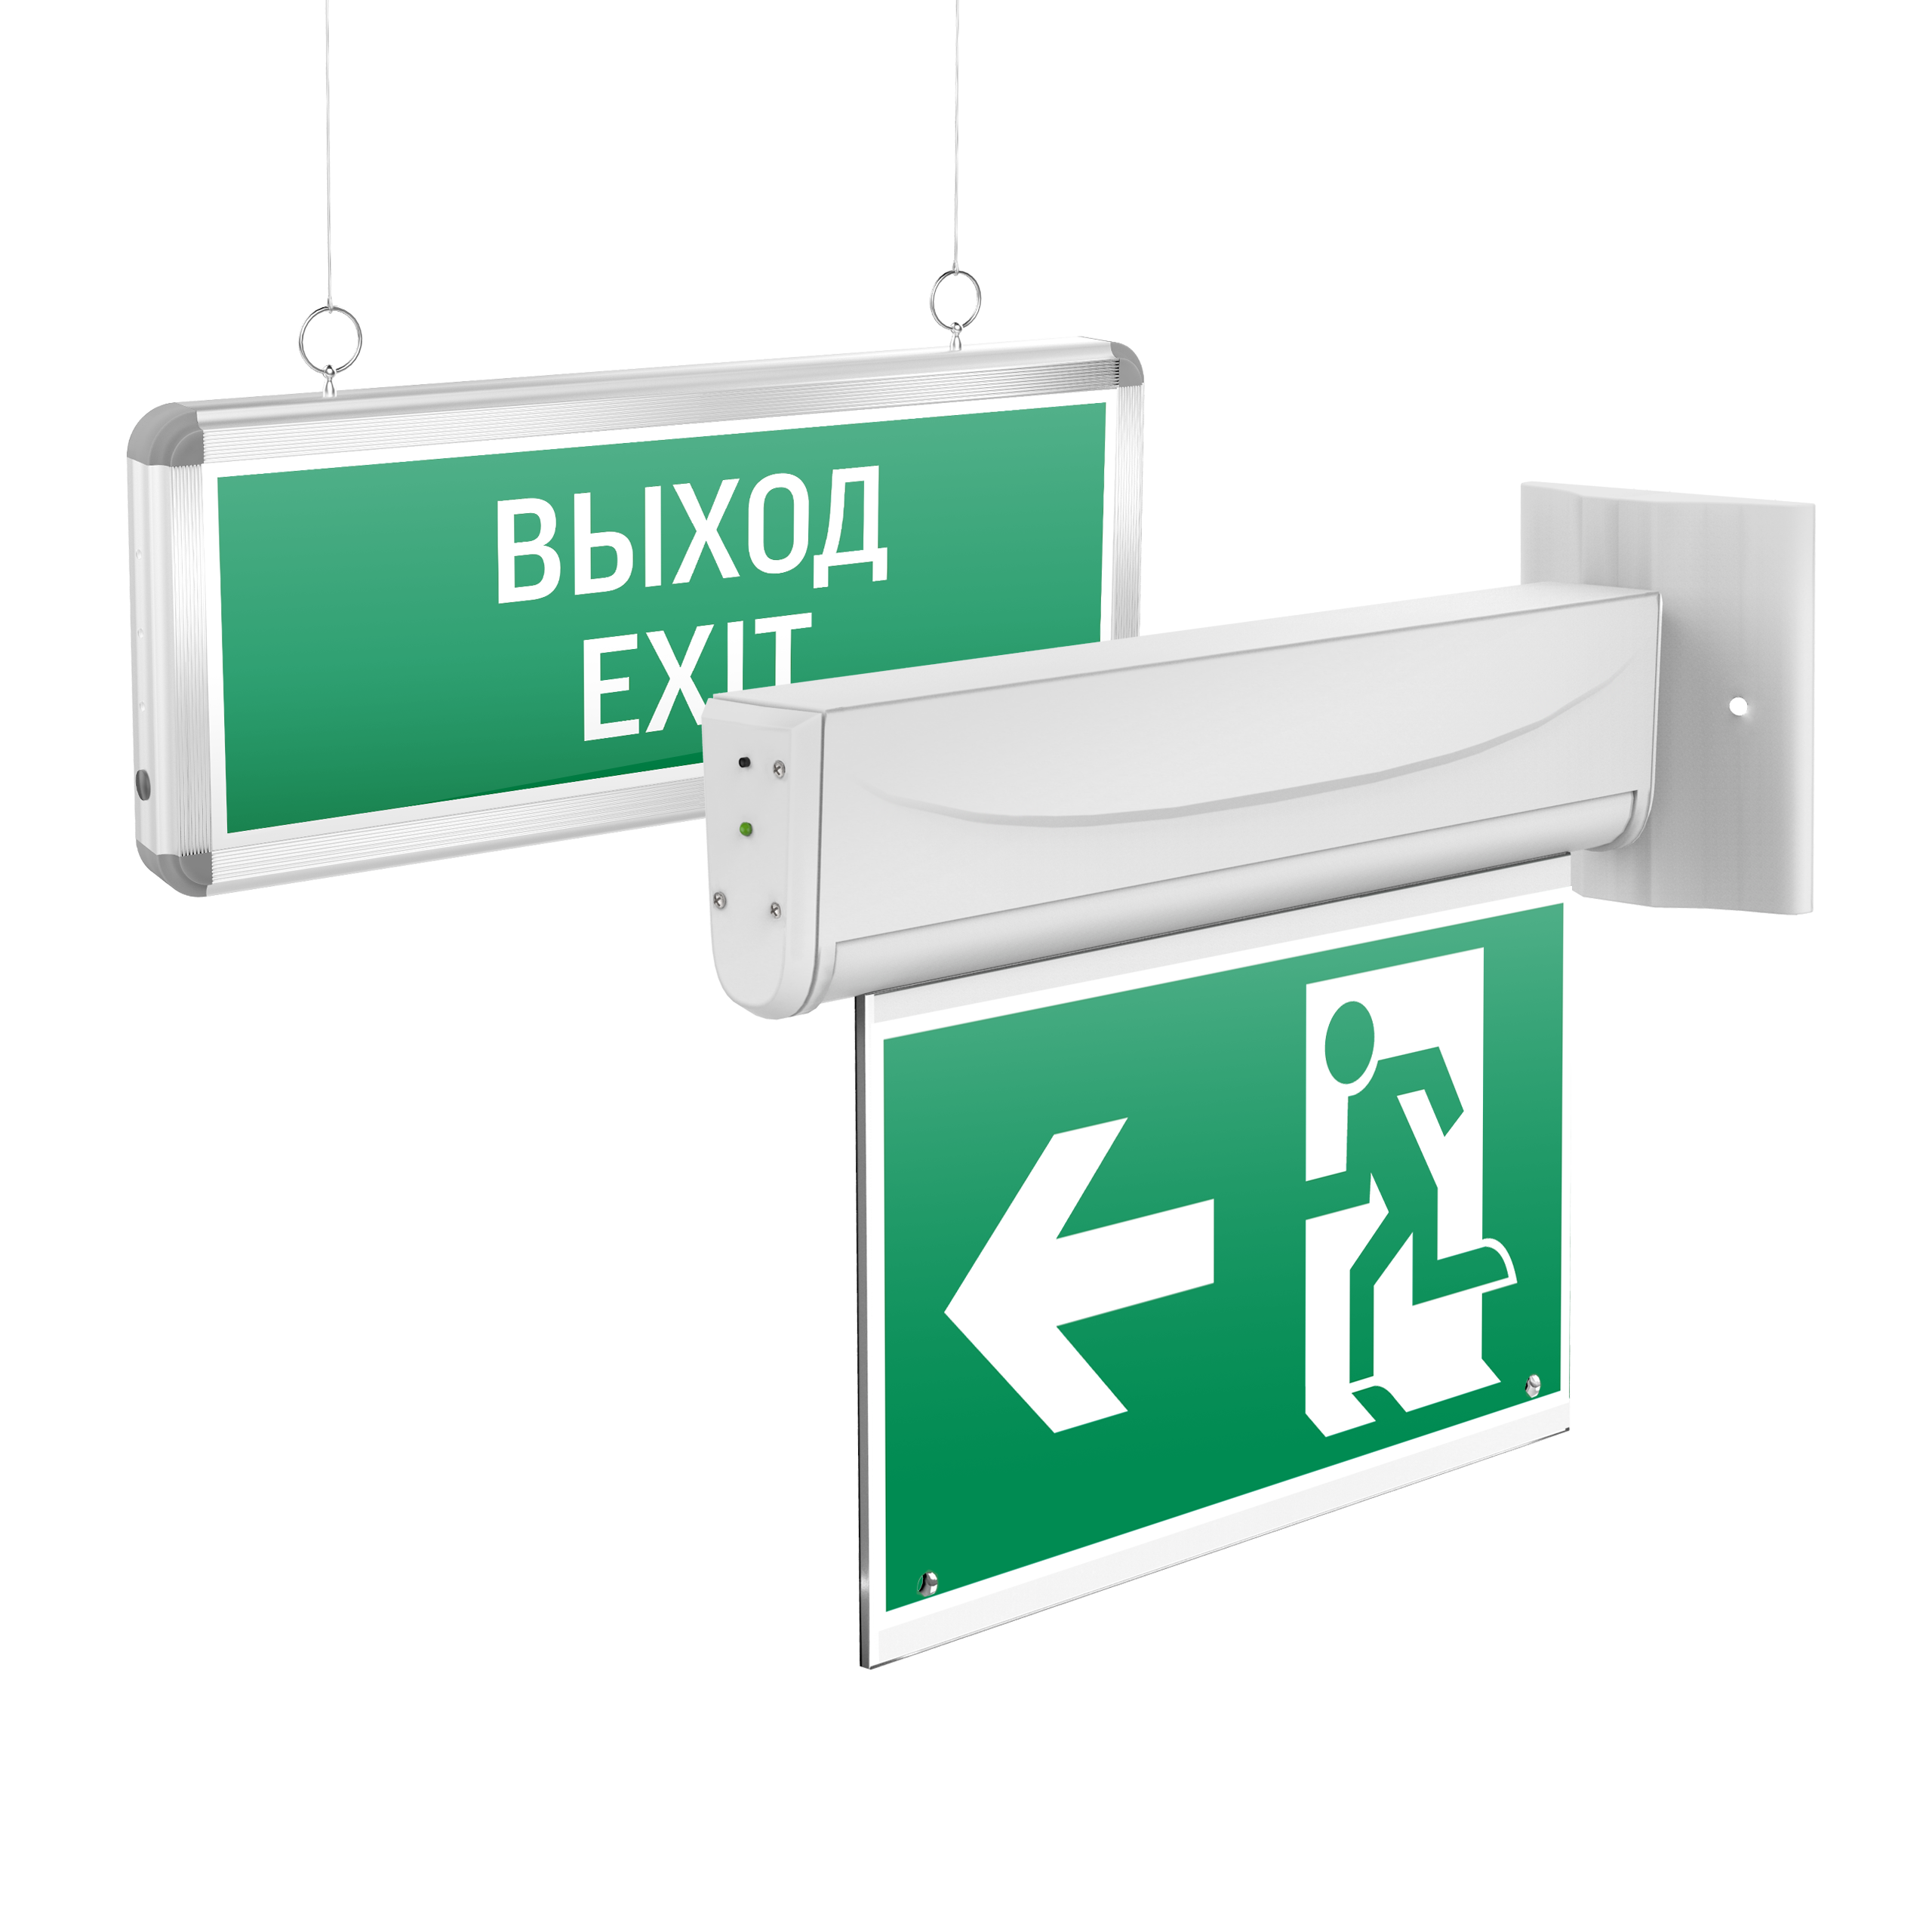 Аварийно-эвакуационные светильники (указатели) BASIC - Аварийно-эвакуационные световые указатели Basic с нанесенными пиктограммами